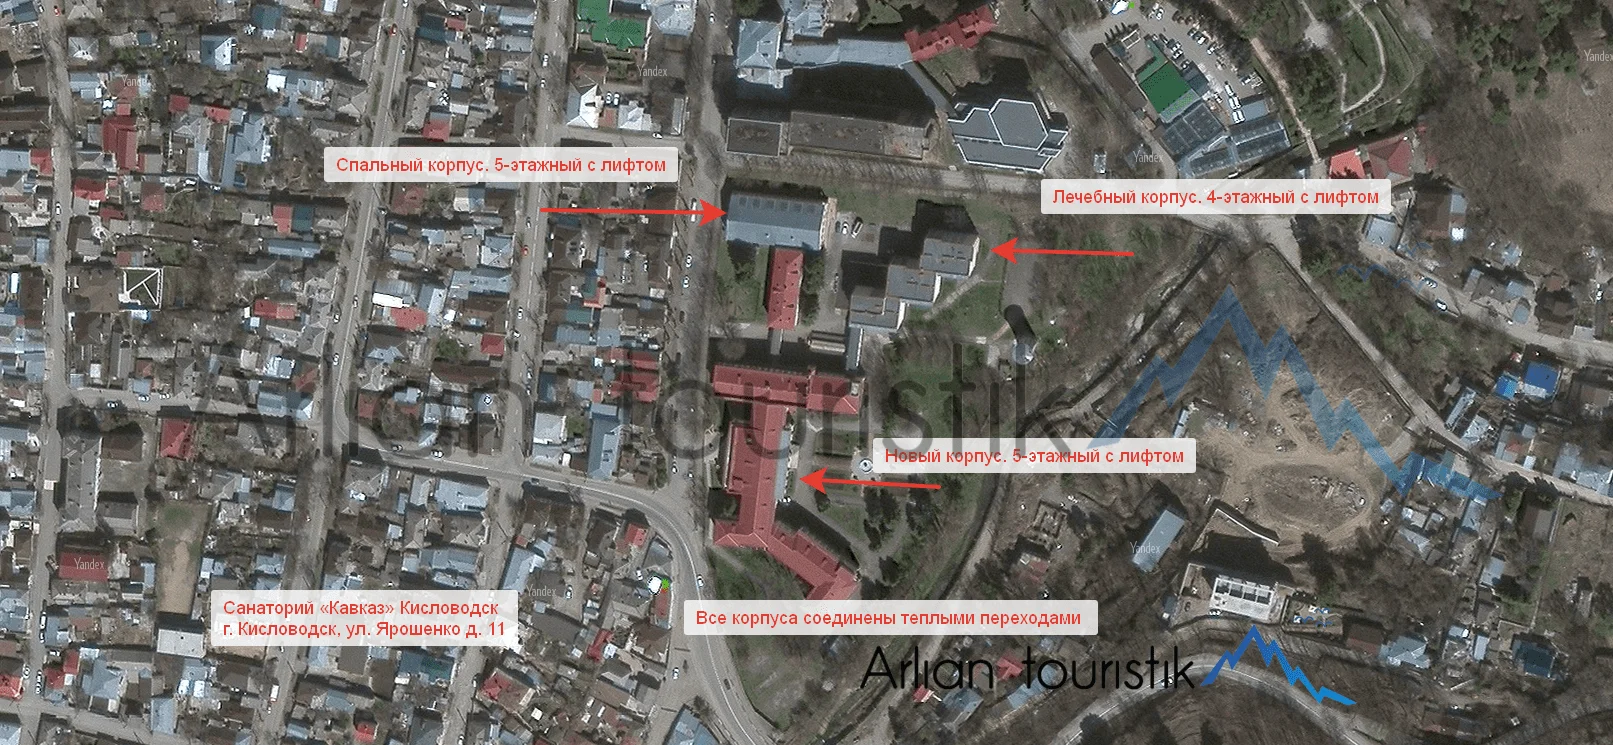 Расположение корпусов санатория «Кавказ» (Кисловодск) План-схема, инфраструктура.